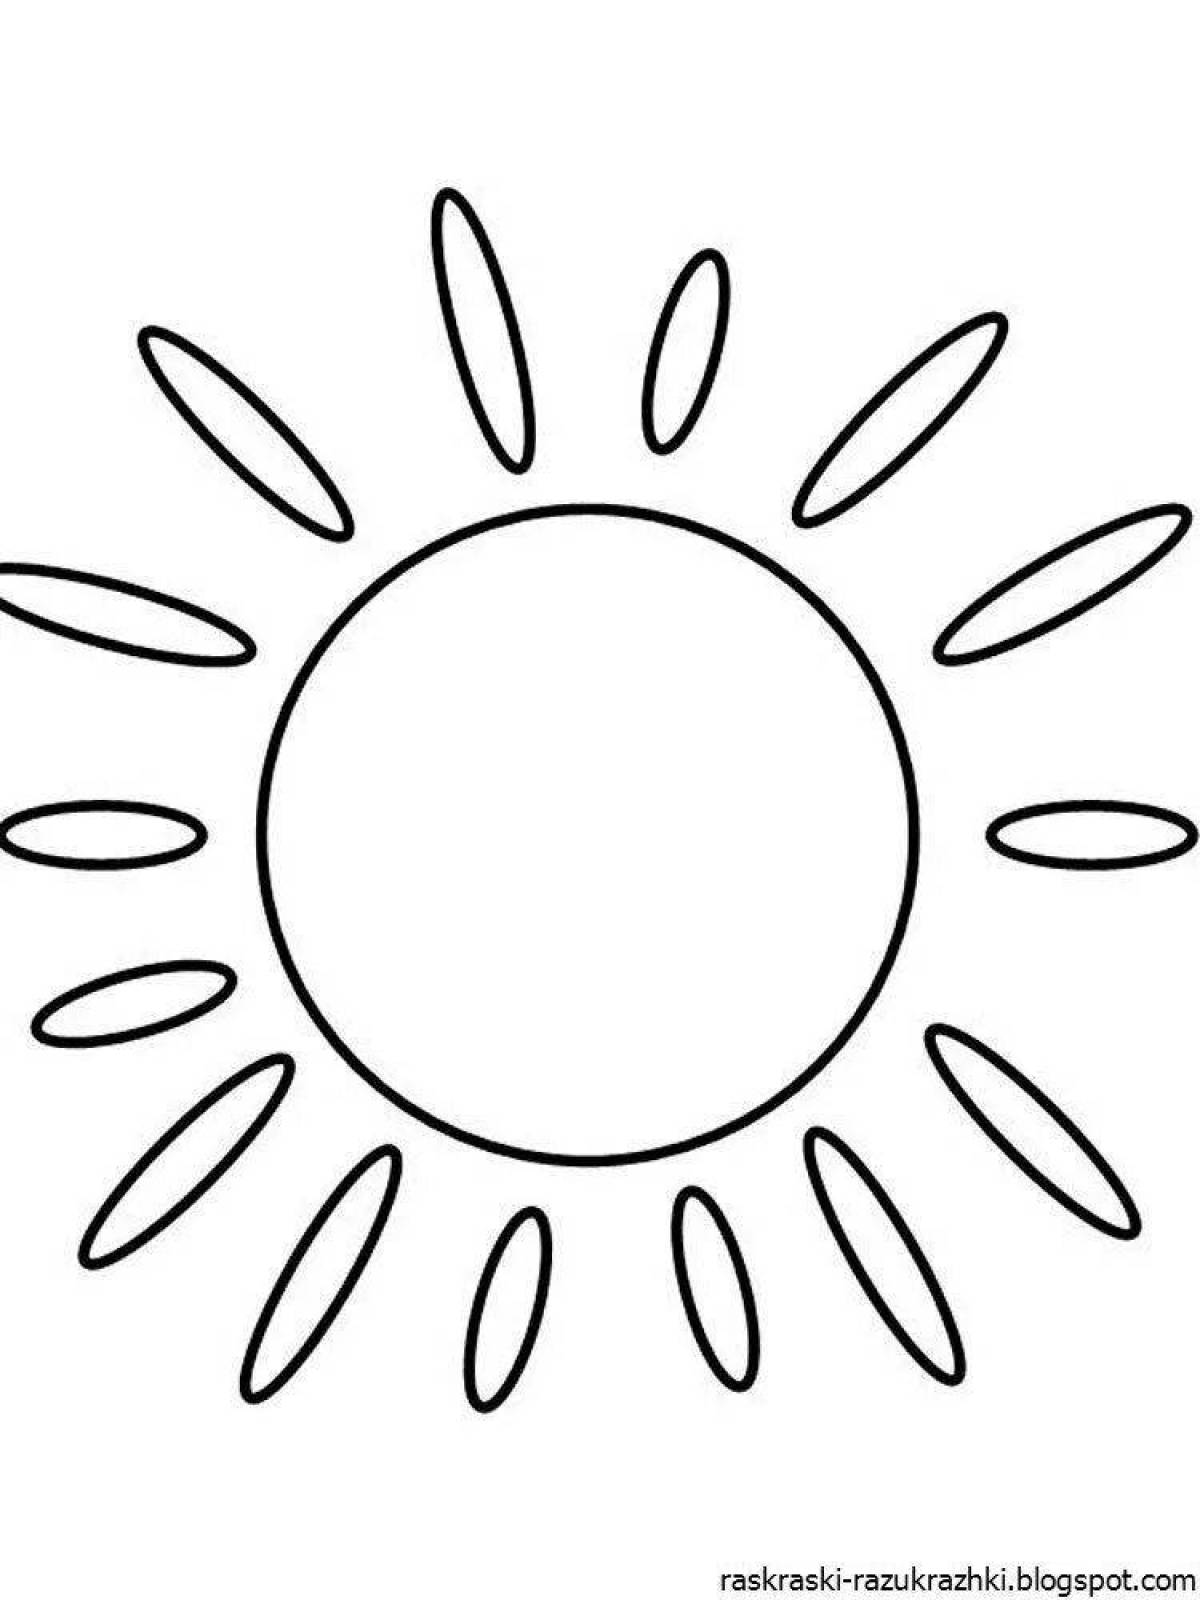 Славная раскраска рисунок солнца